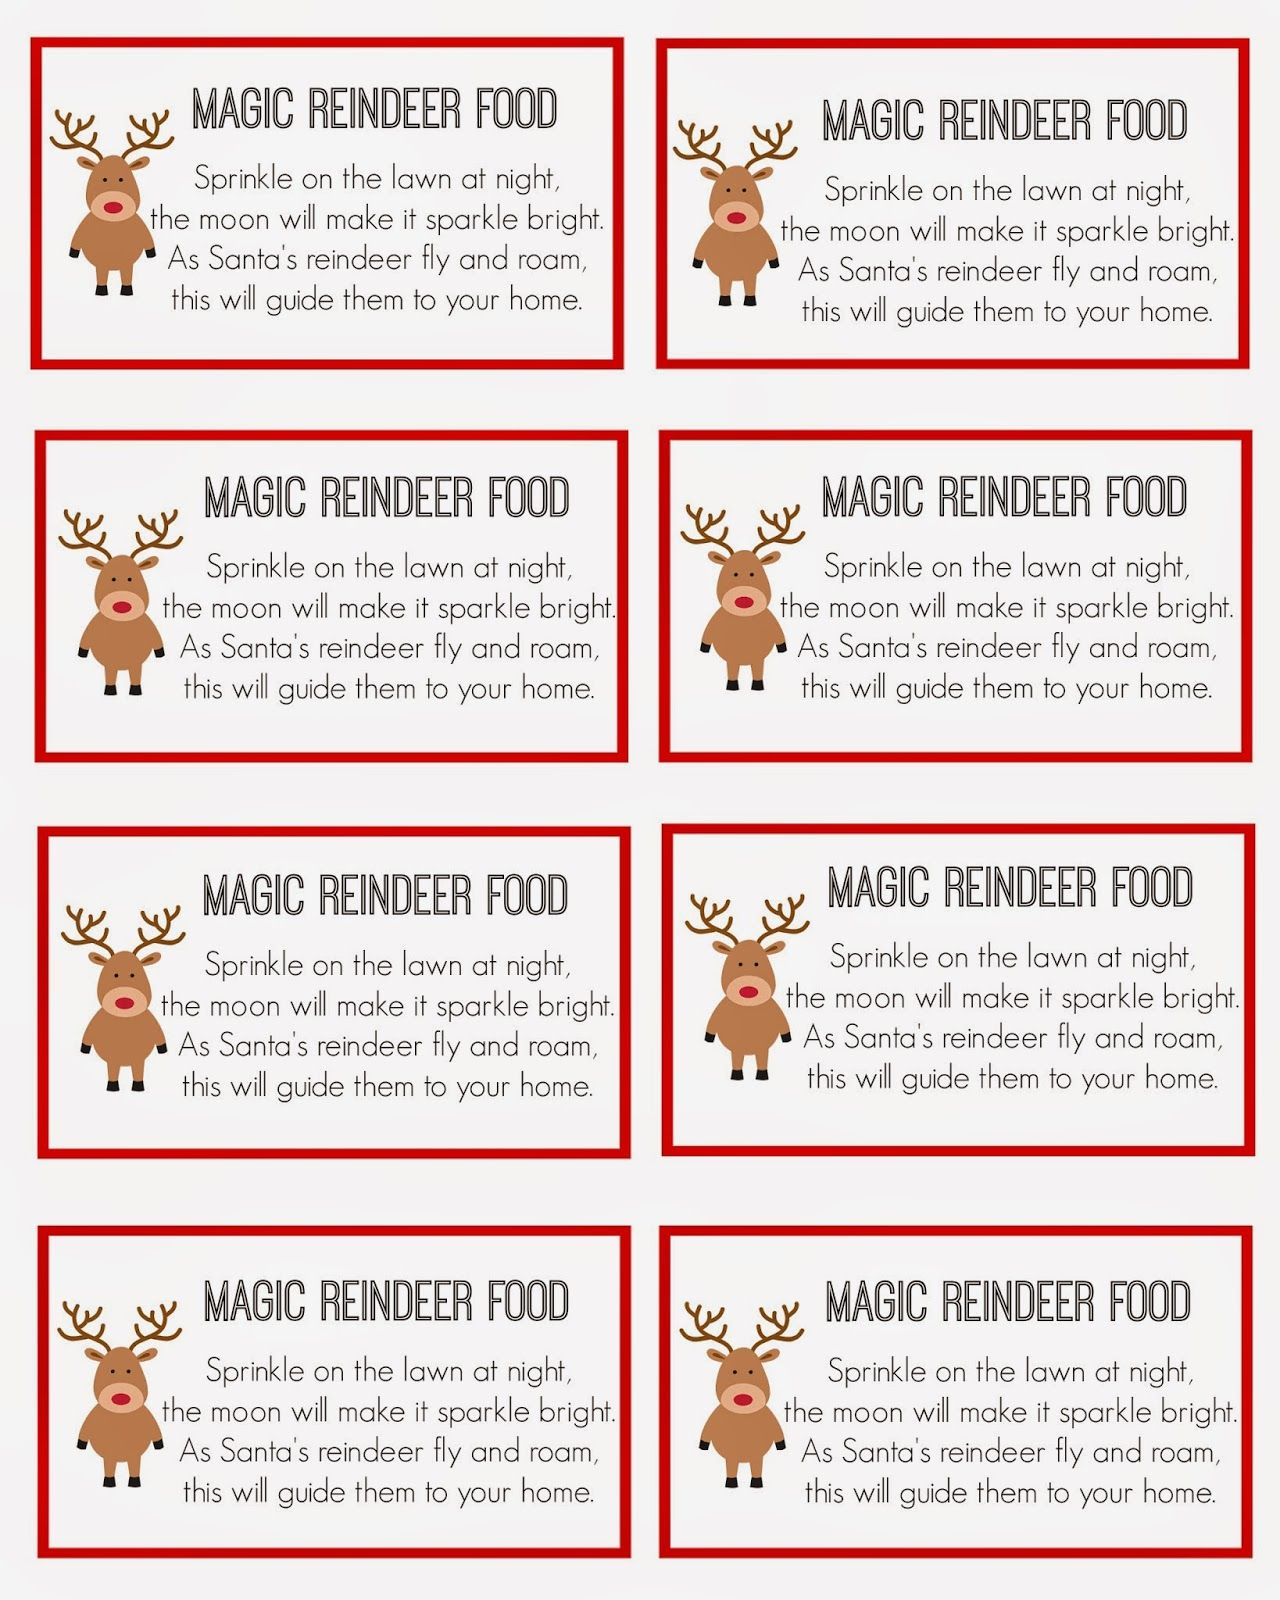 Magic Reindeer Food Reindeer Food Label Magic Reindeer Food